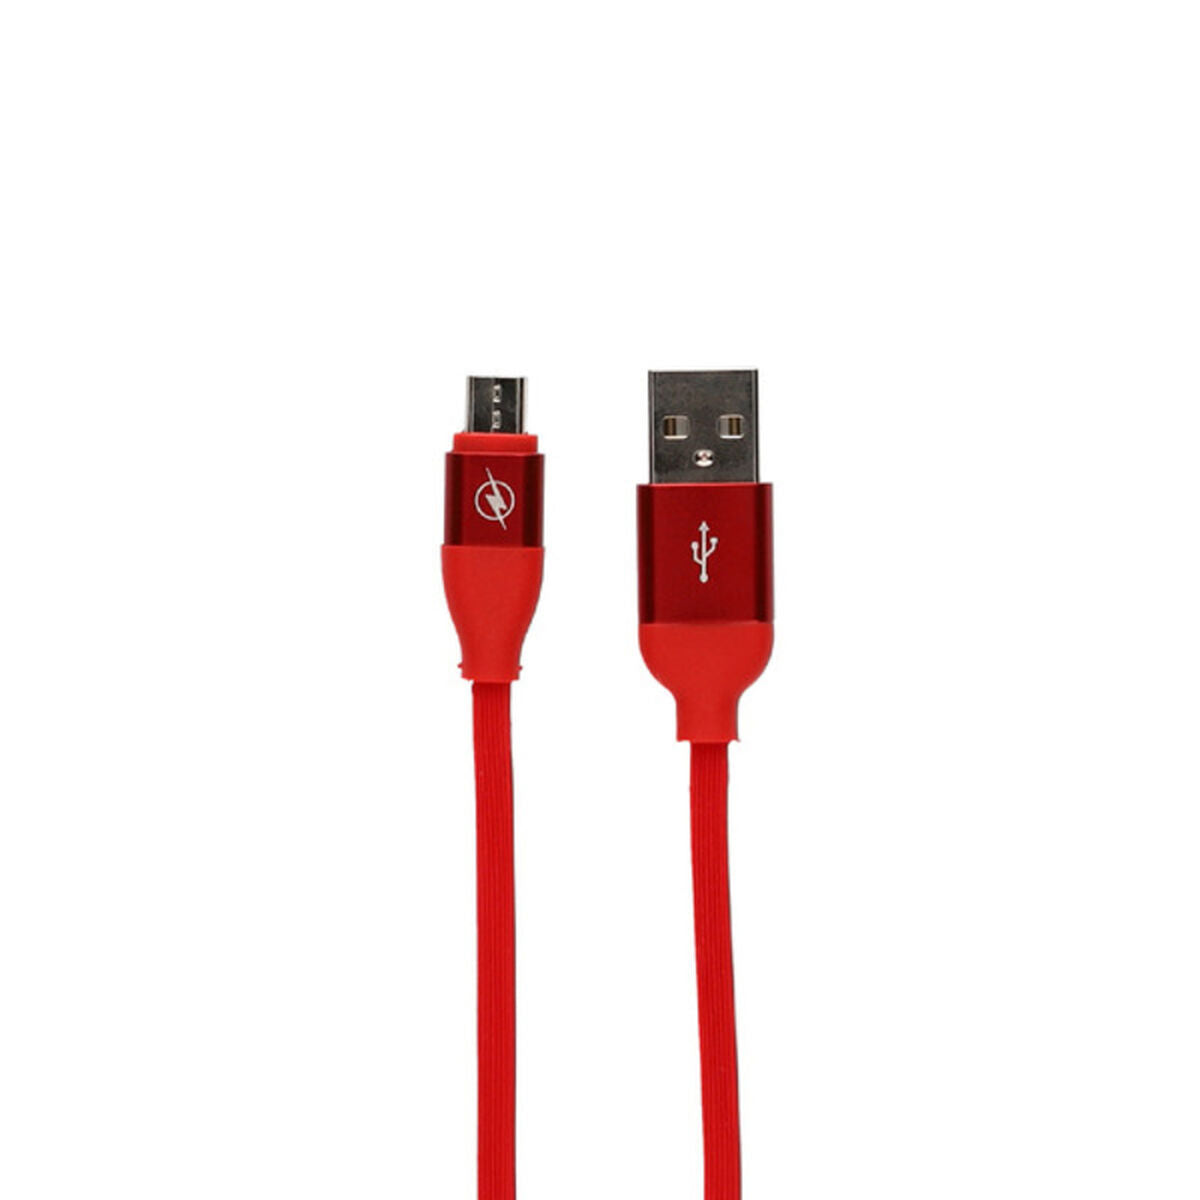 USB към светкавичен кабел контакт 2a 1,5 m